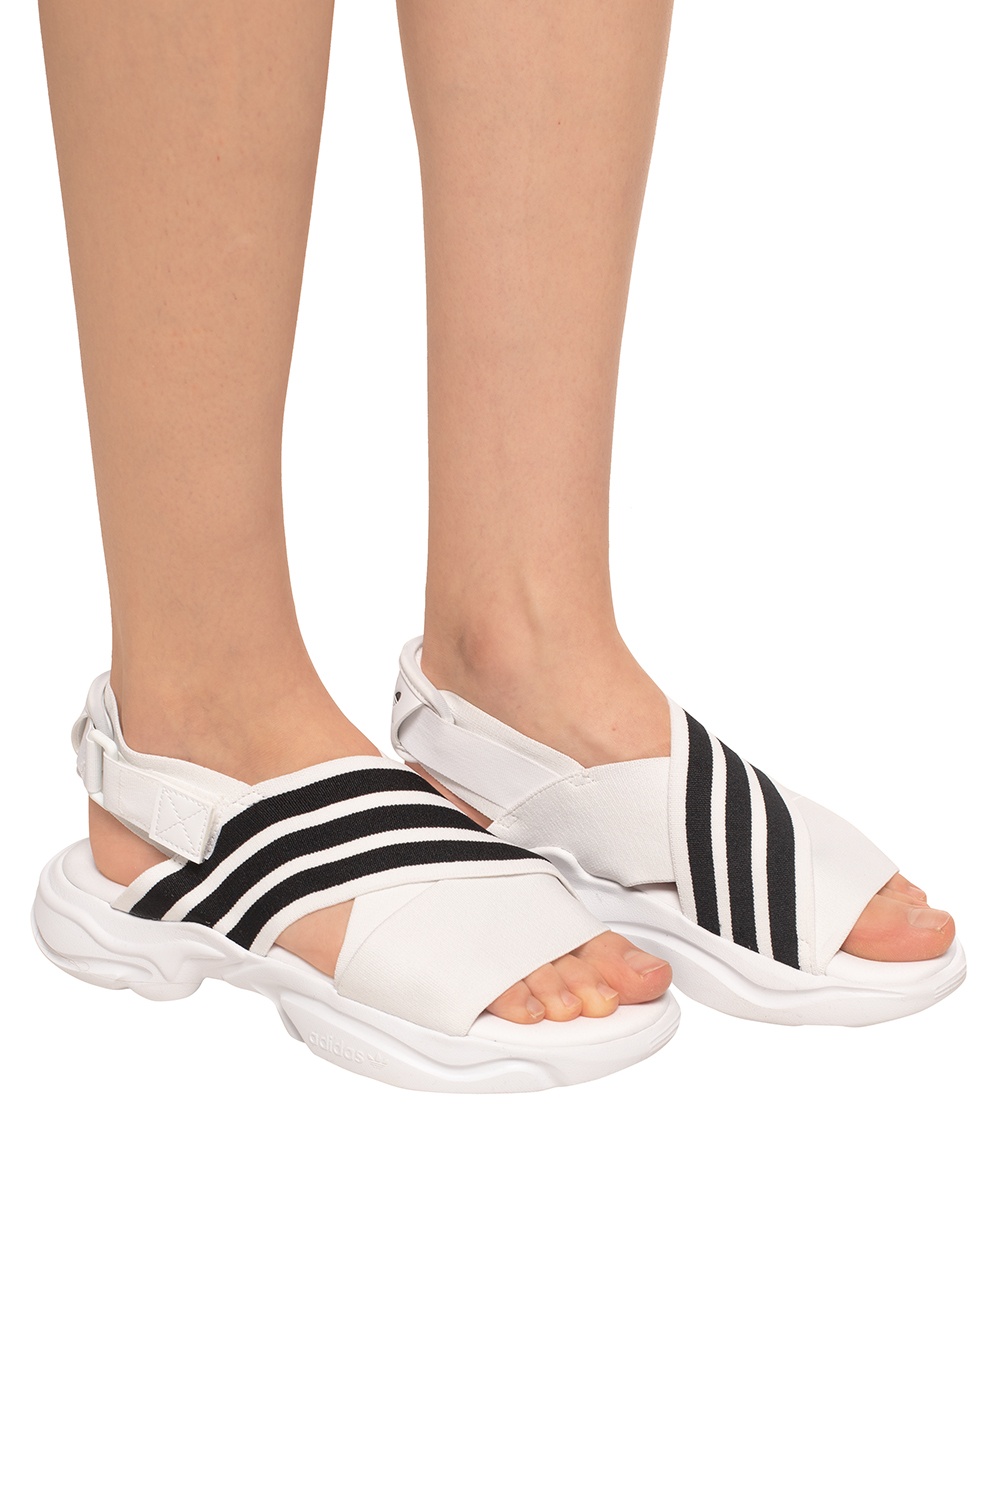 magmur sandals